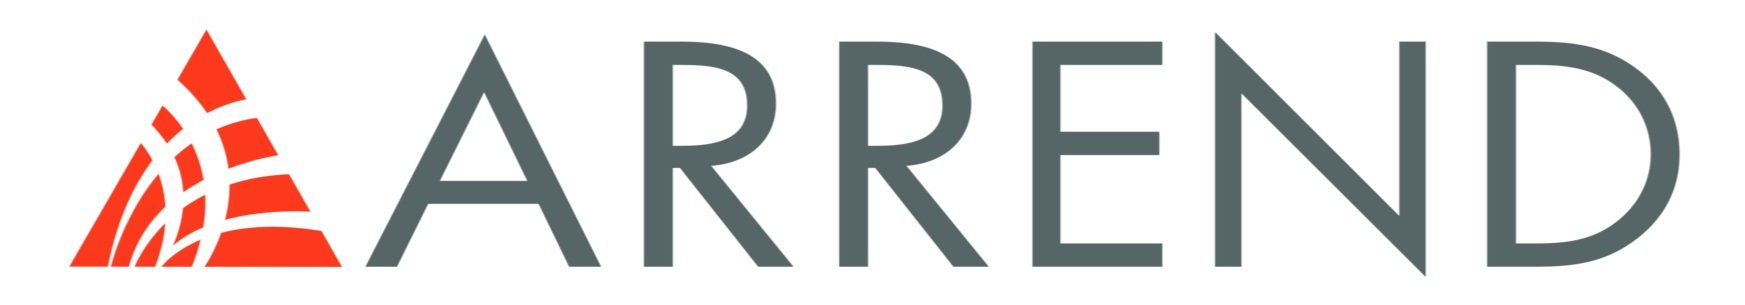 Logo-Arrend-y-ALD---NUEVO-2018.jpg